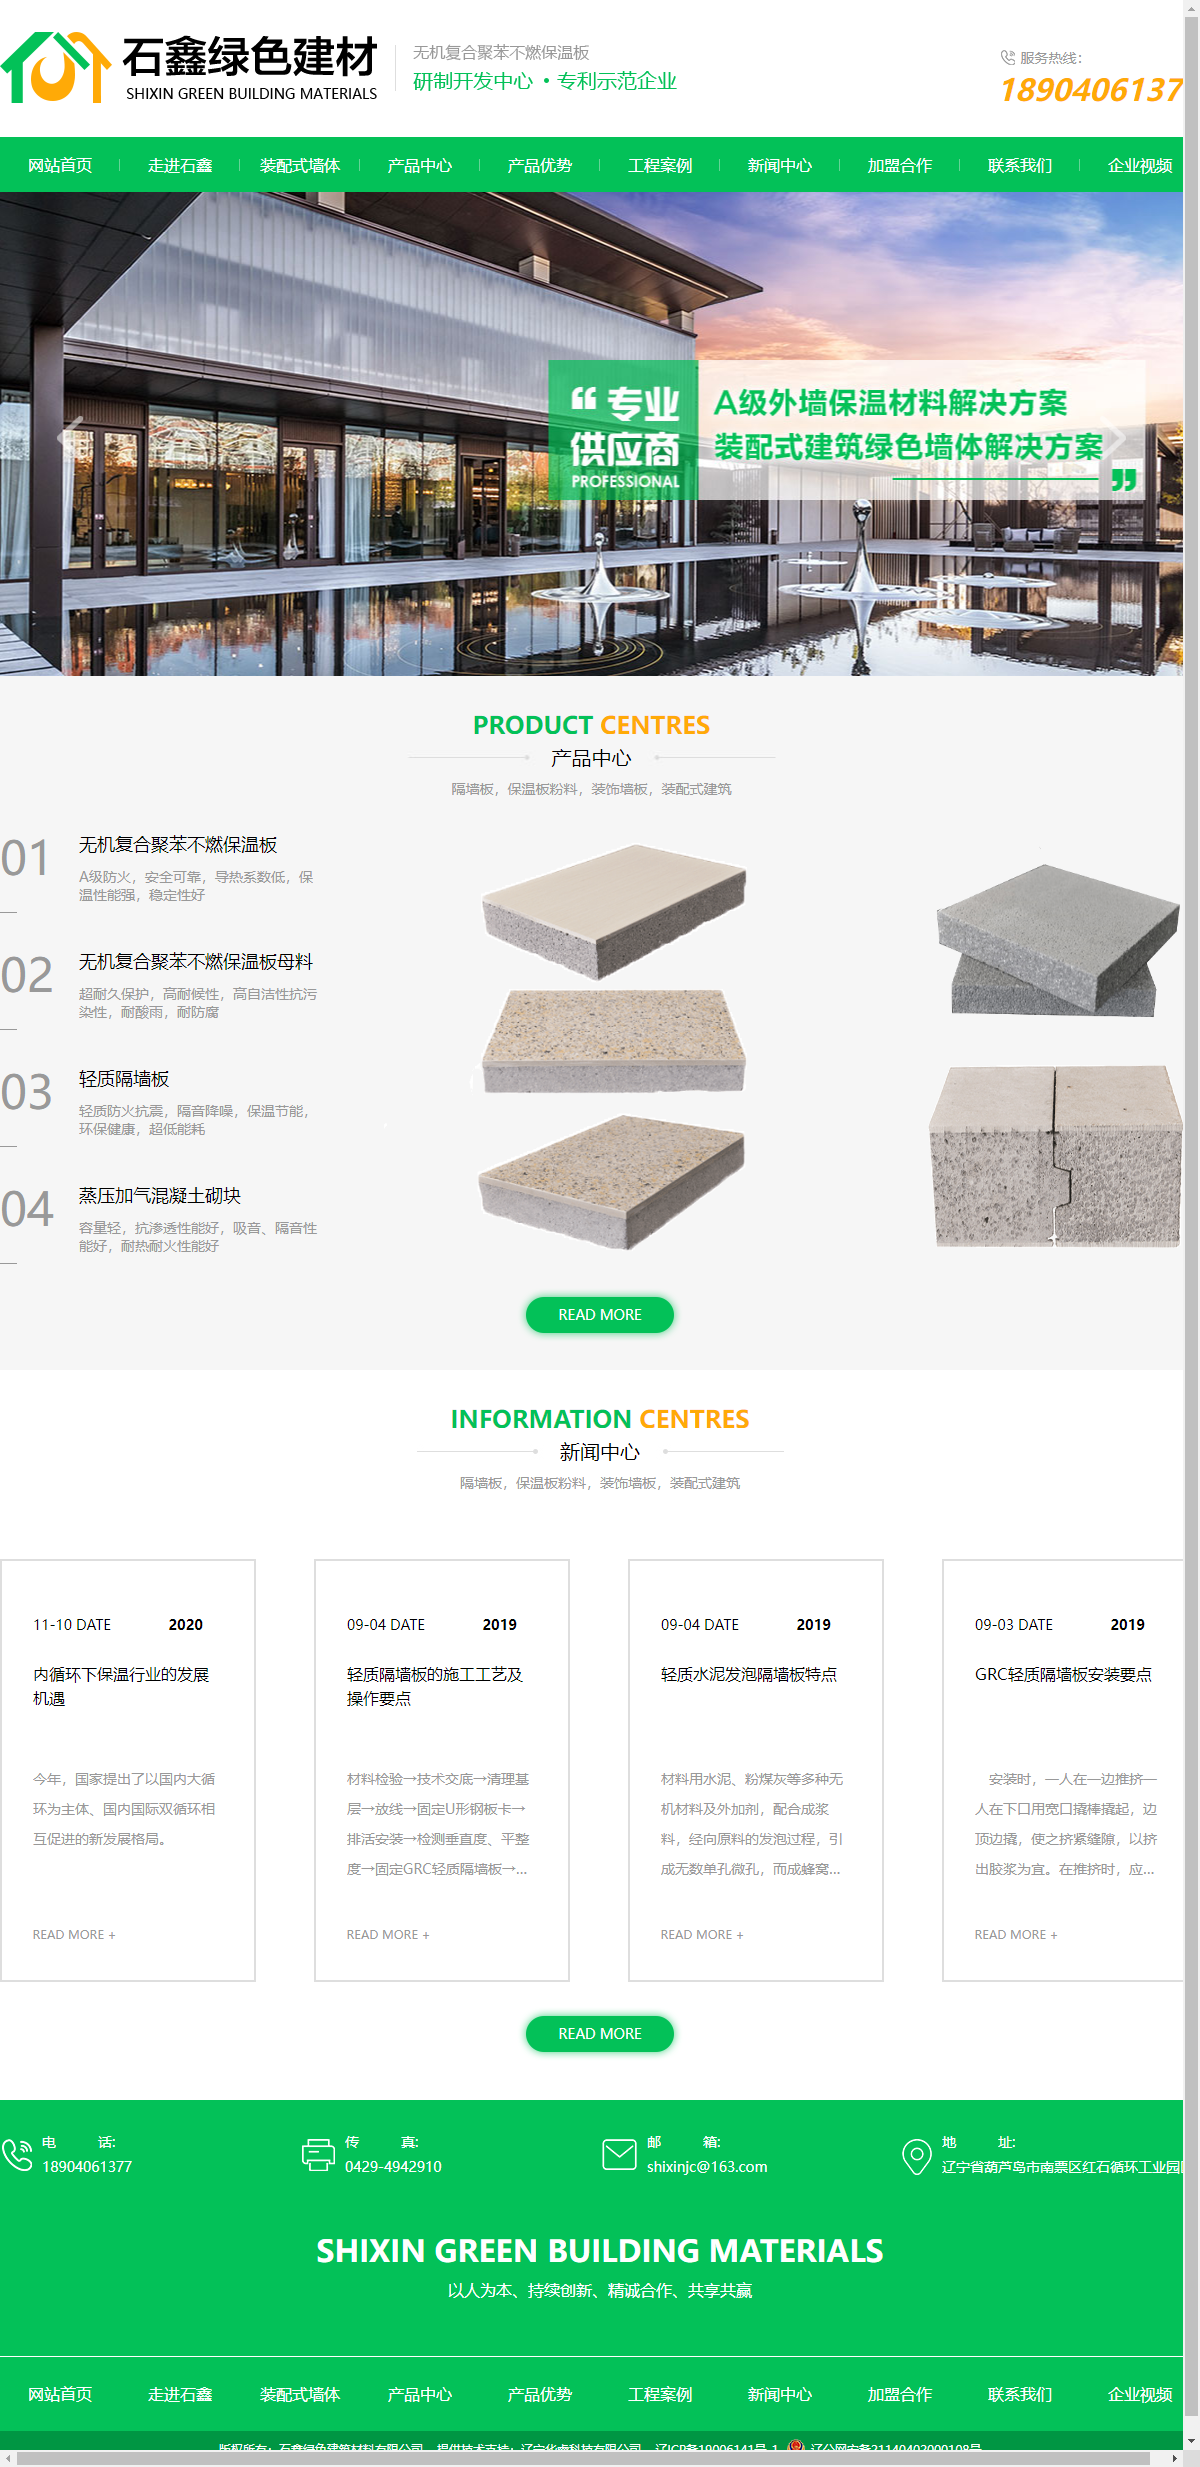 葫芦岛市石鑫绿色建筑材料有限公司网站案例